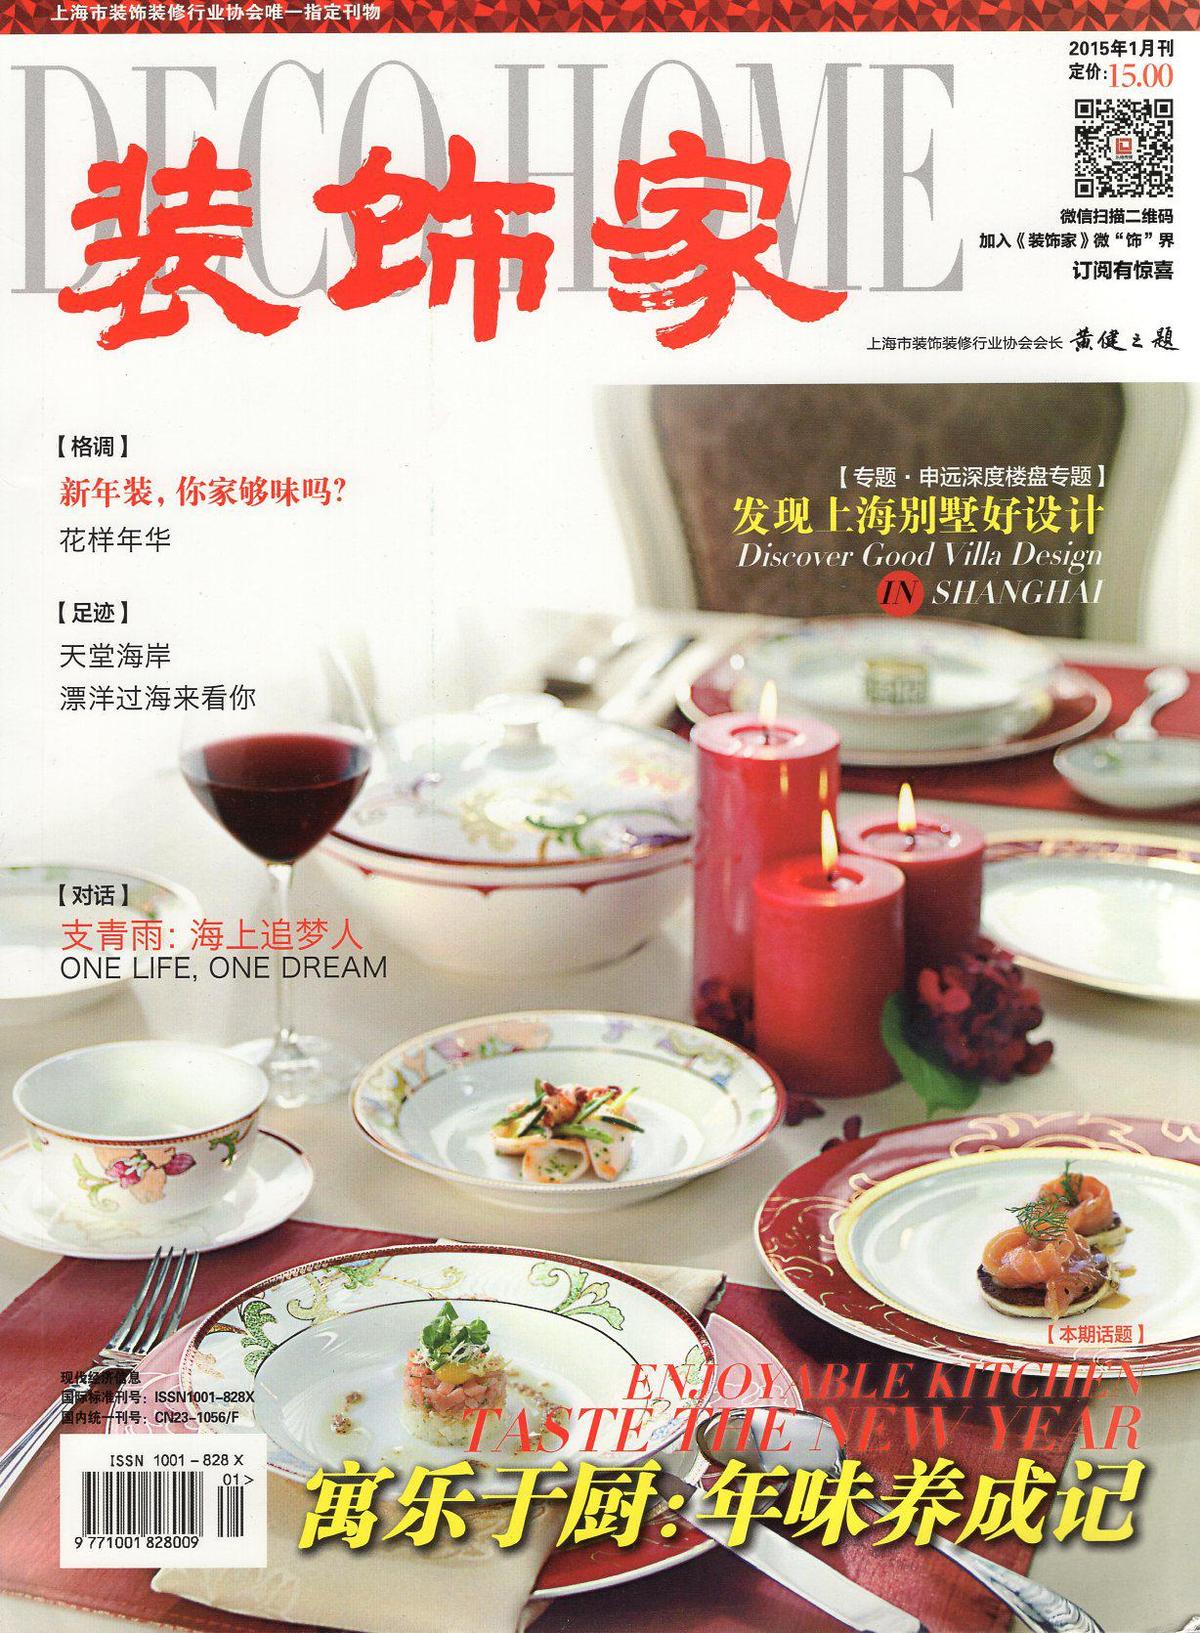 装饰家2015年1、2月刊.两册合售.专题.申远深度楼盘专题.发现上海别墅好设计.